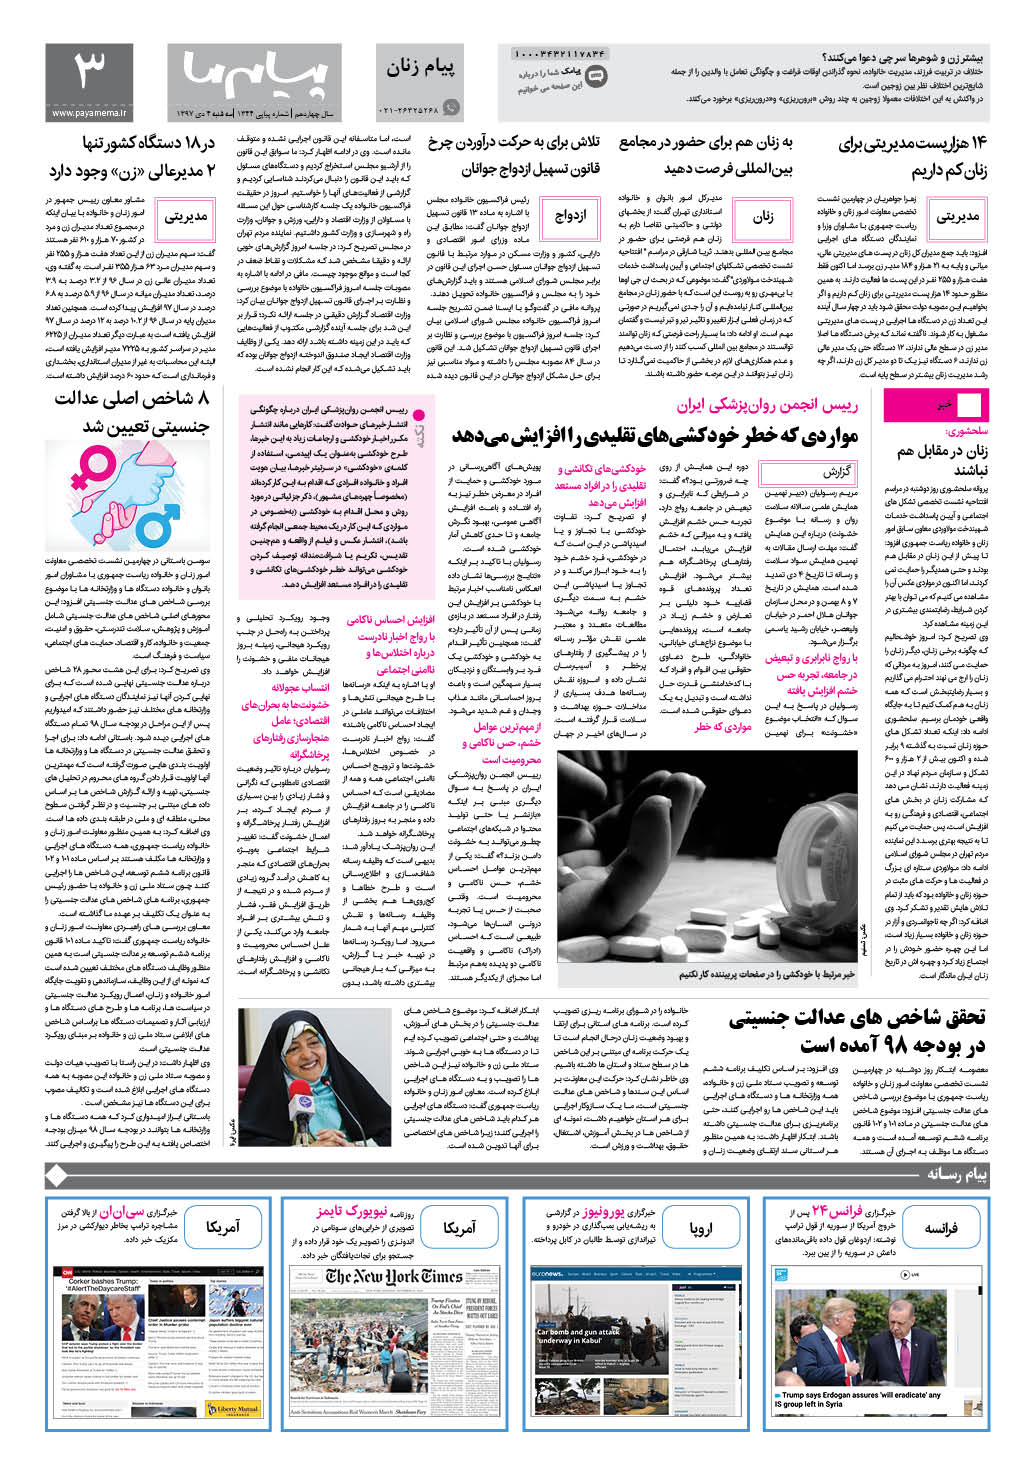 صفحه پیام زنان شماره 1344 روزنامه پیام ما